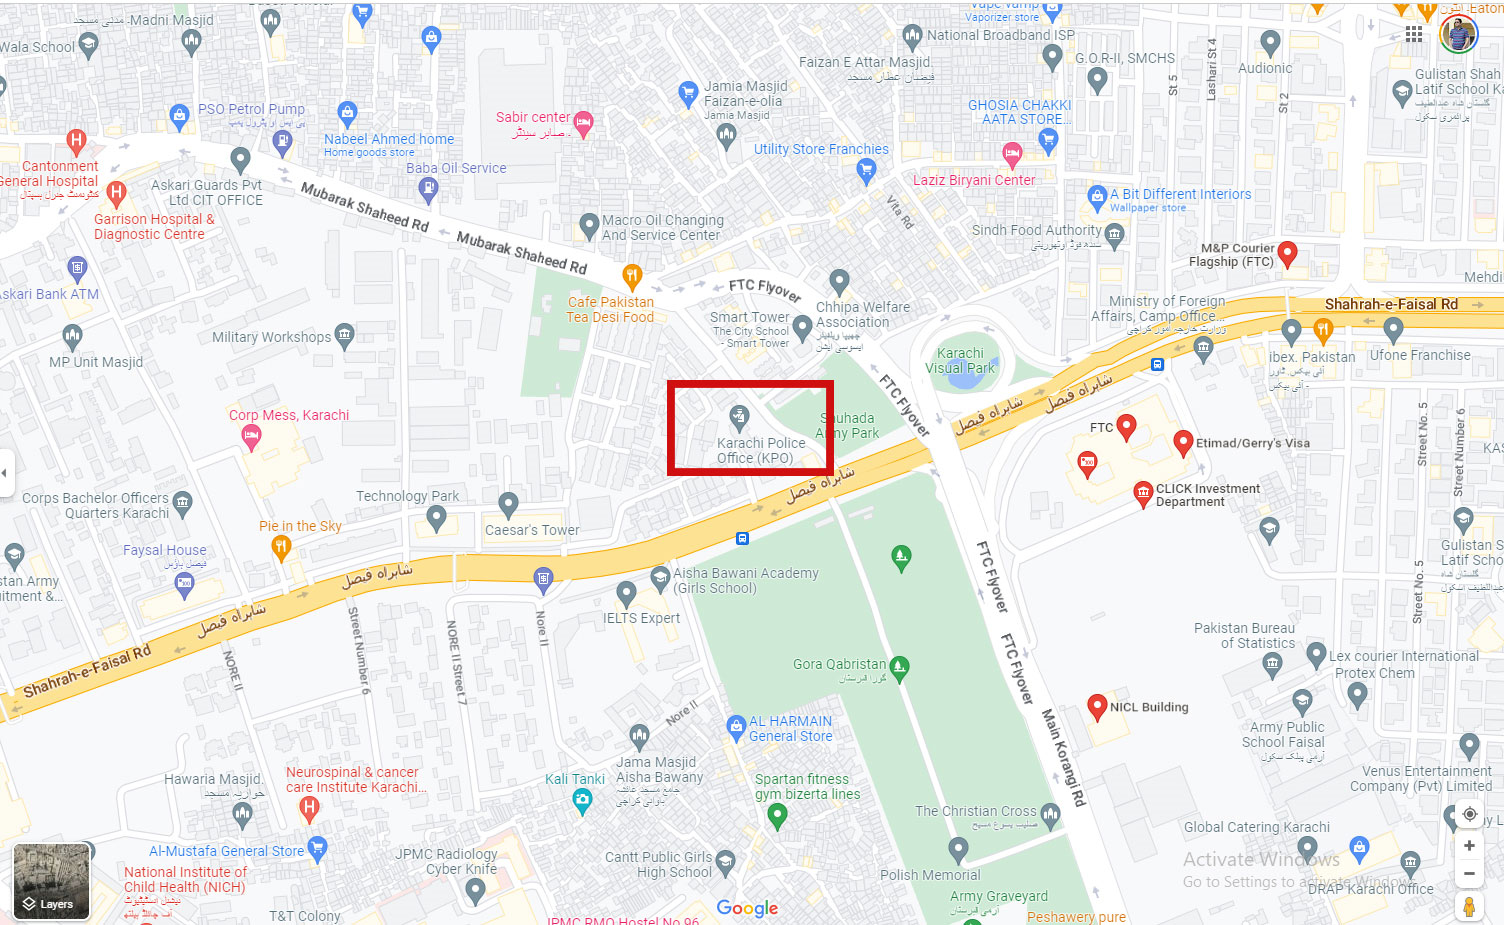 Karaçi'deki polis ofisinin konumu.  — Google Haritalar